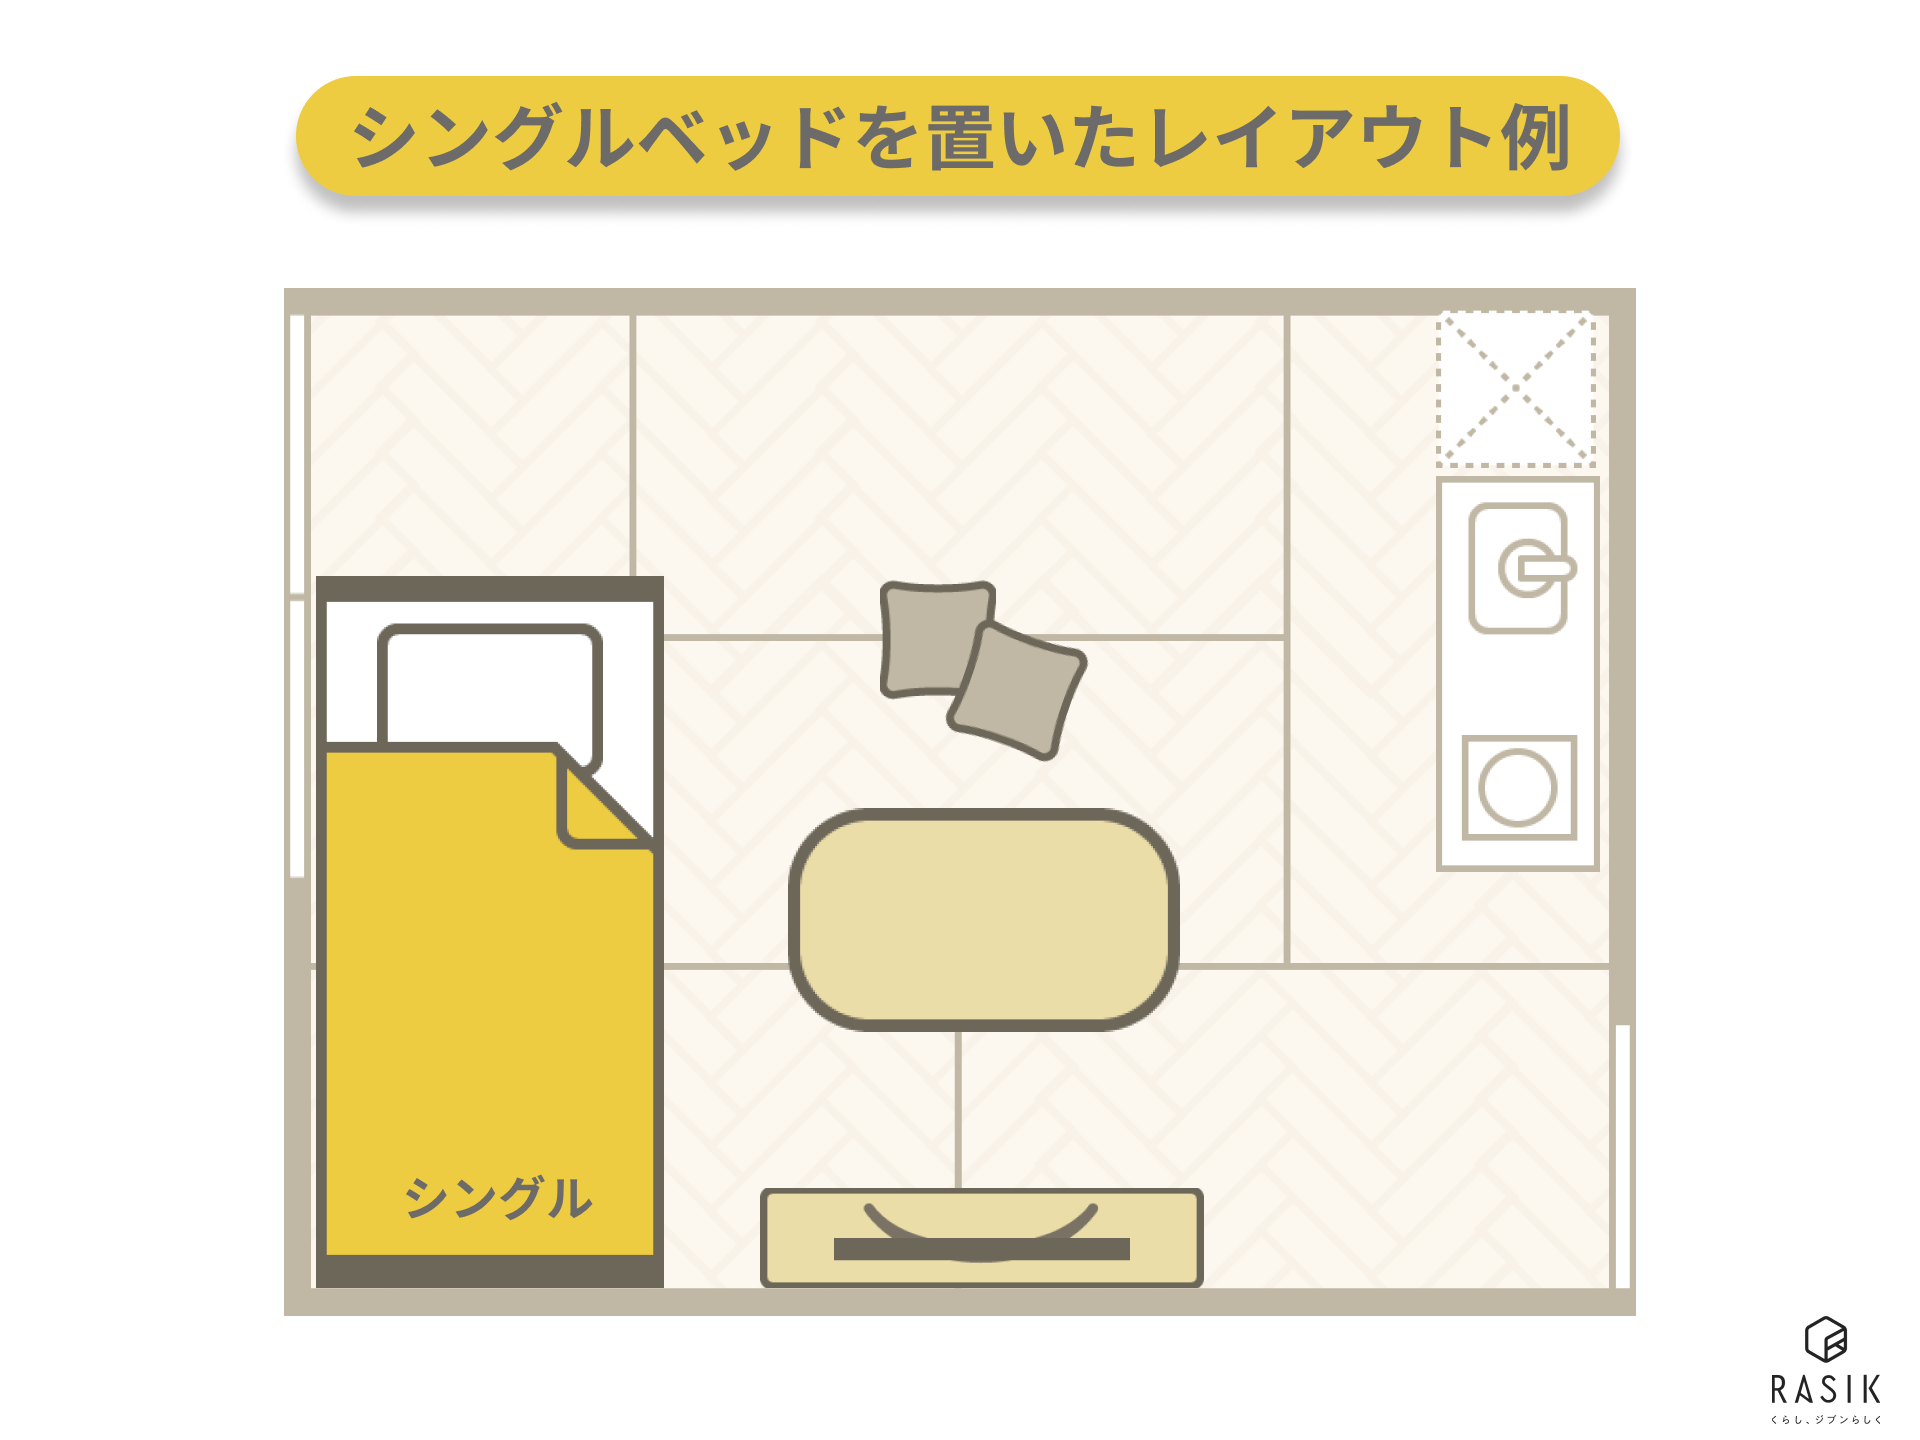 6畳の一人暮らし部屋にシングルベッドを置いた例